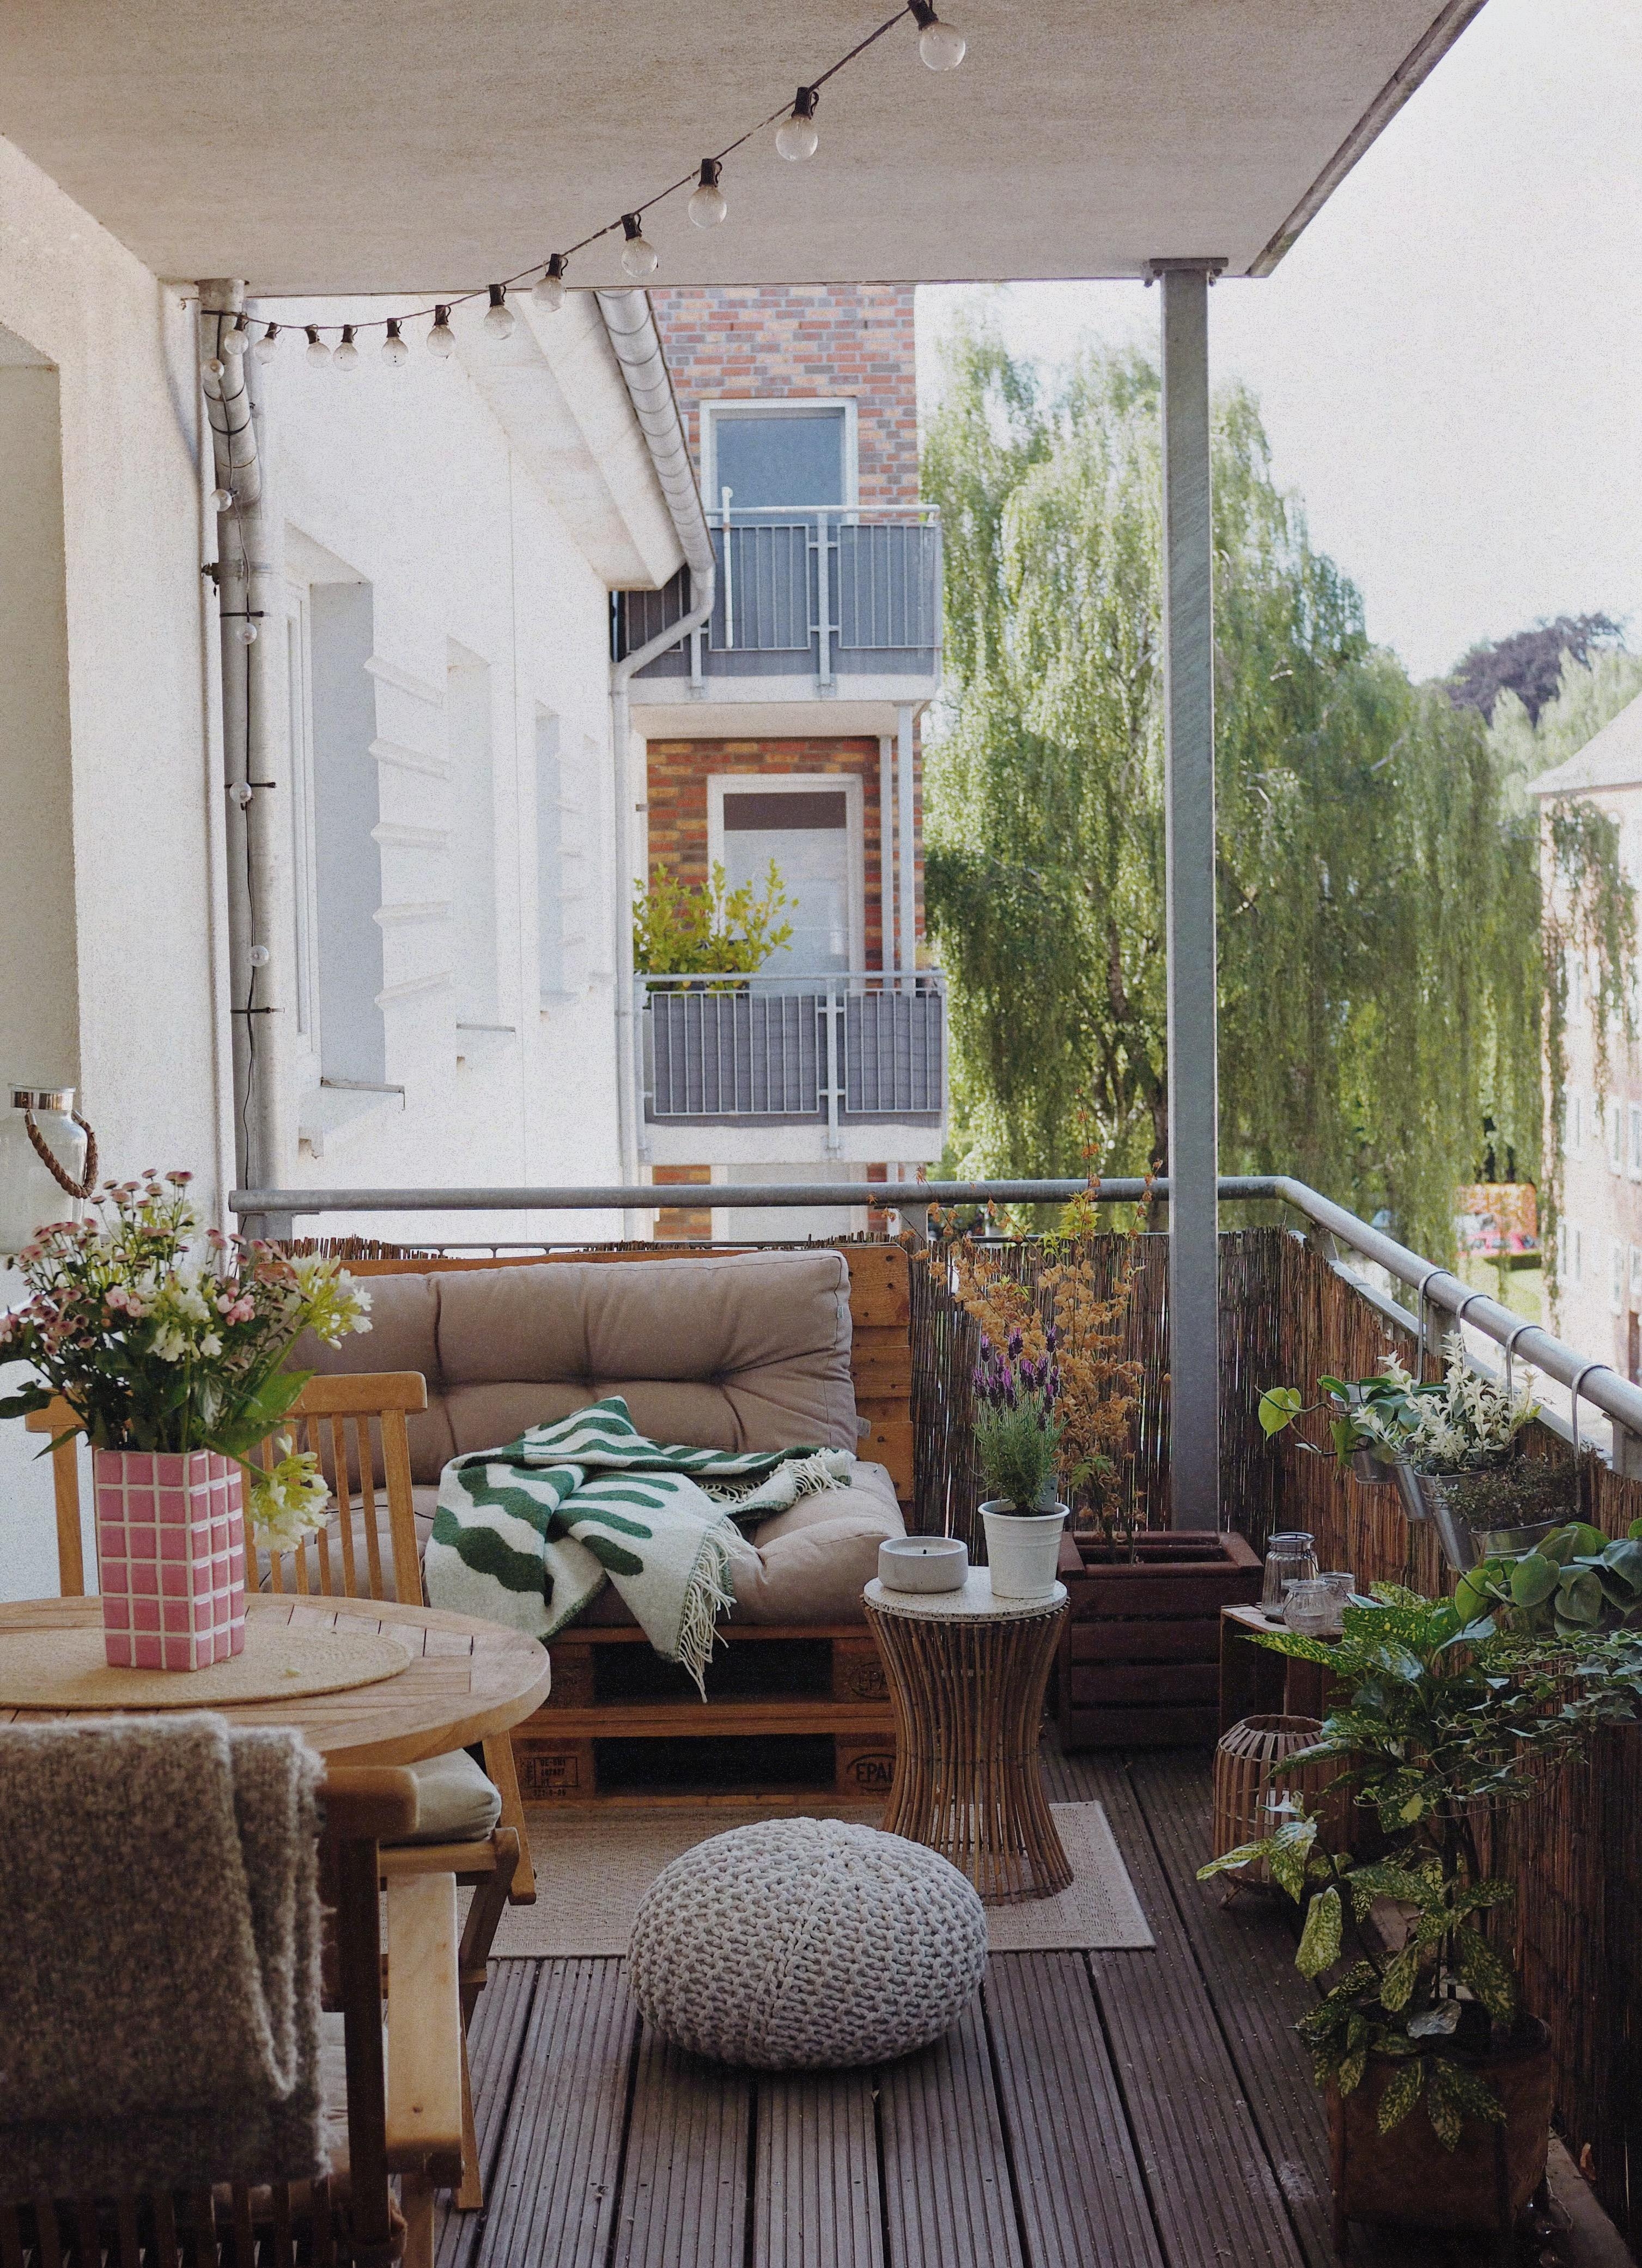 🫶🏽 
#balkon #outdoor #palettenmöbel #balkonideen #balkonpflanzen